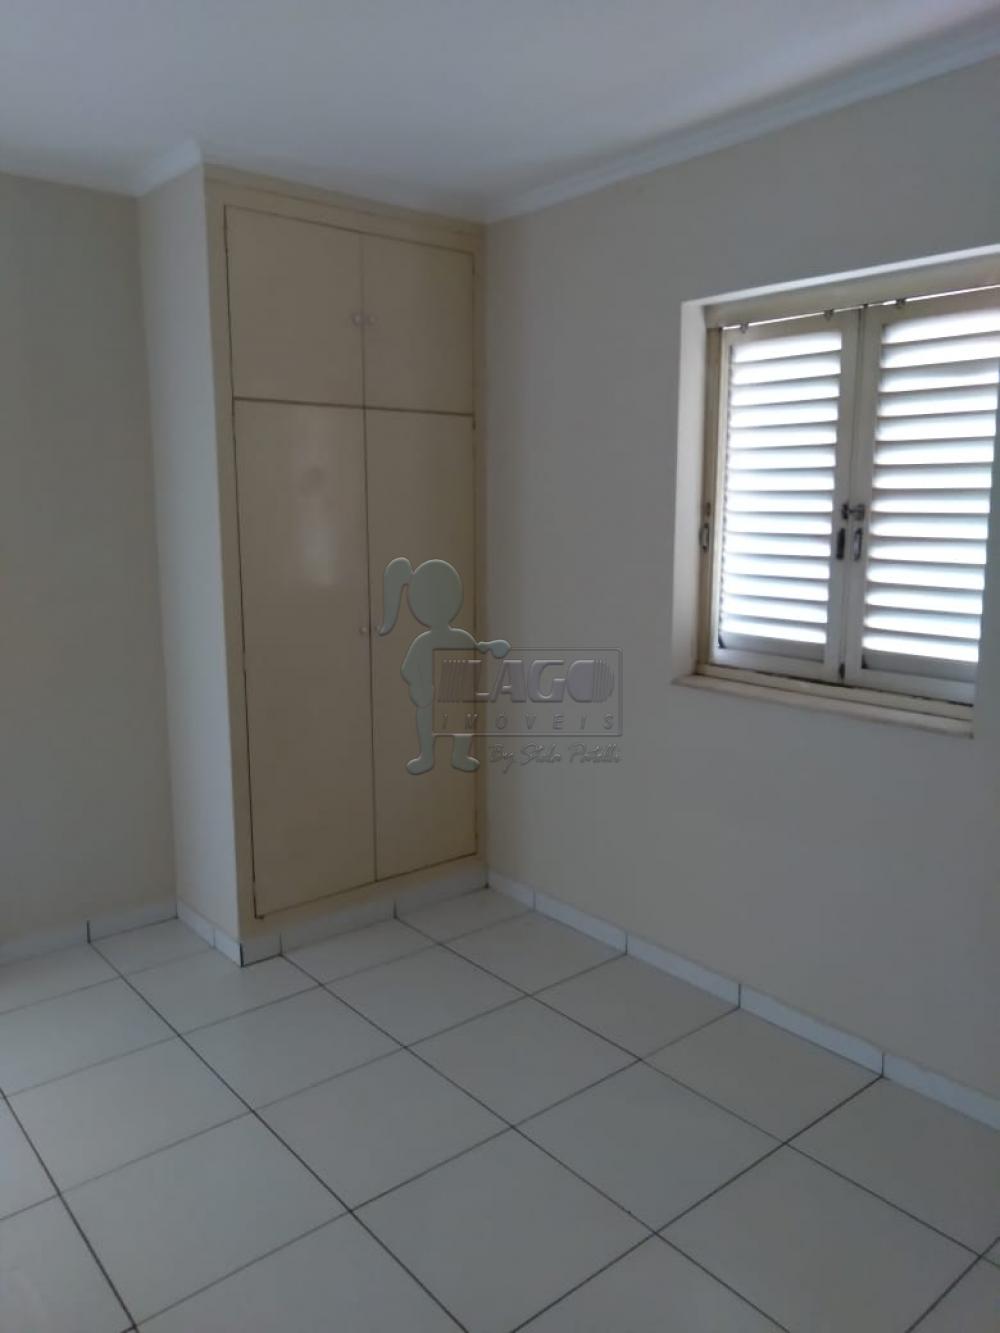 Alugar Apartamentos / Padrão em Ribeirão Preto R$ 750,00 - Foto 6